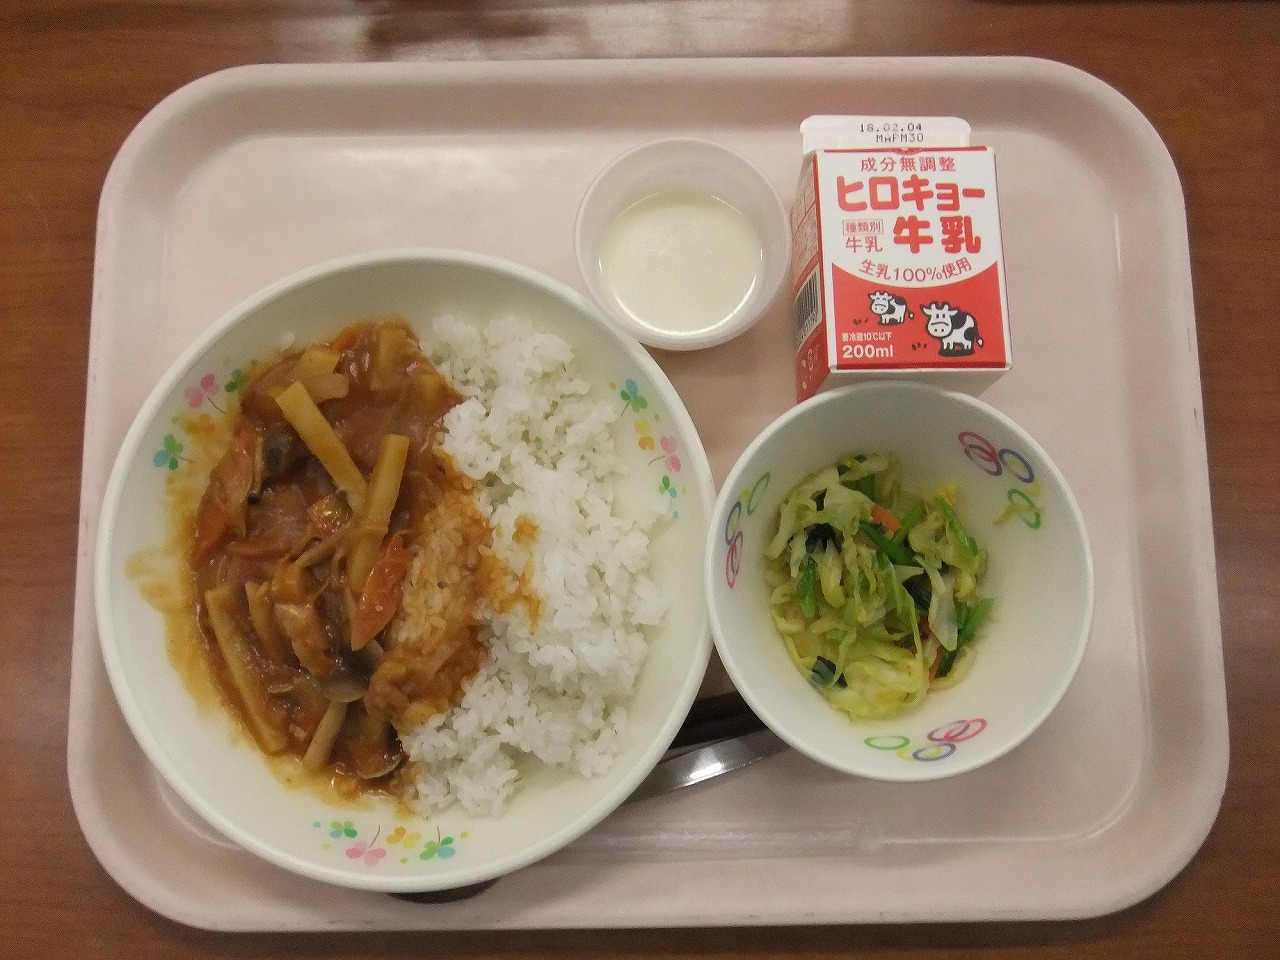 壬生小学校給食「りんごヨーグルトふわふわムース」